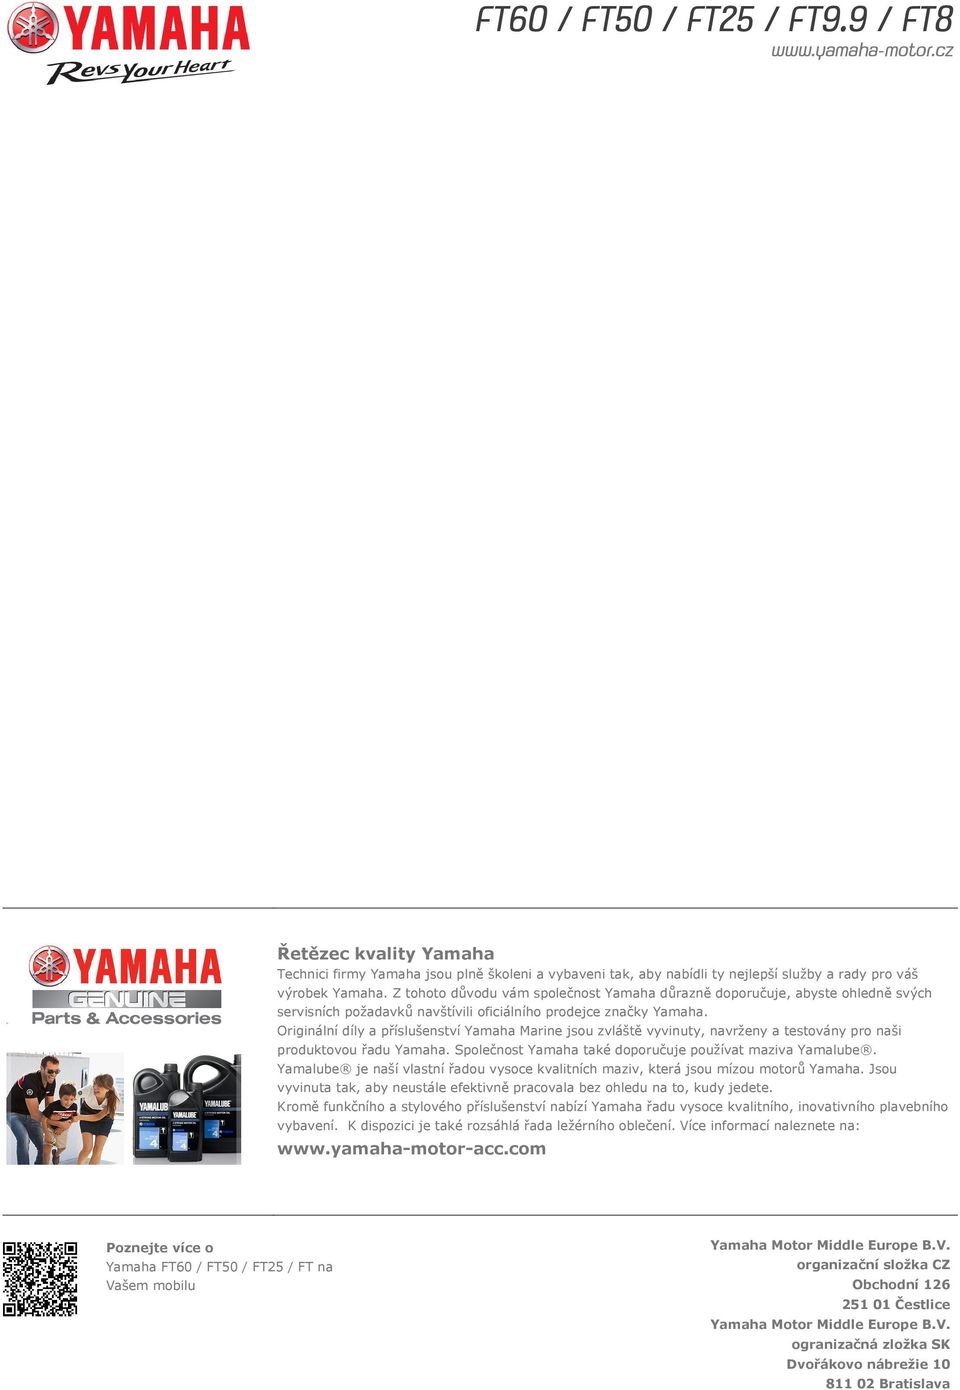 Originální díly a příslušenství Yamaha Marine jsou zvláště vyvinuty, navrženy a testovány pro naši produktovou řadu Yamaha. Společnost Yamaha také doporučuje používat maziva Yamalube.